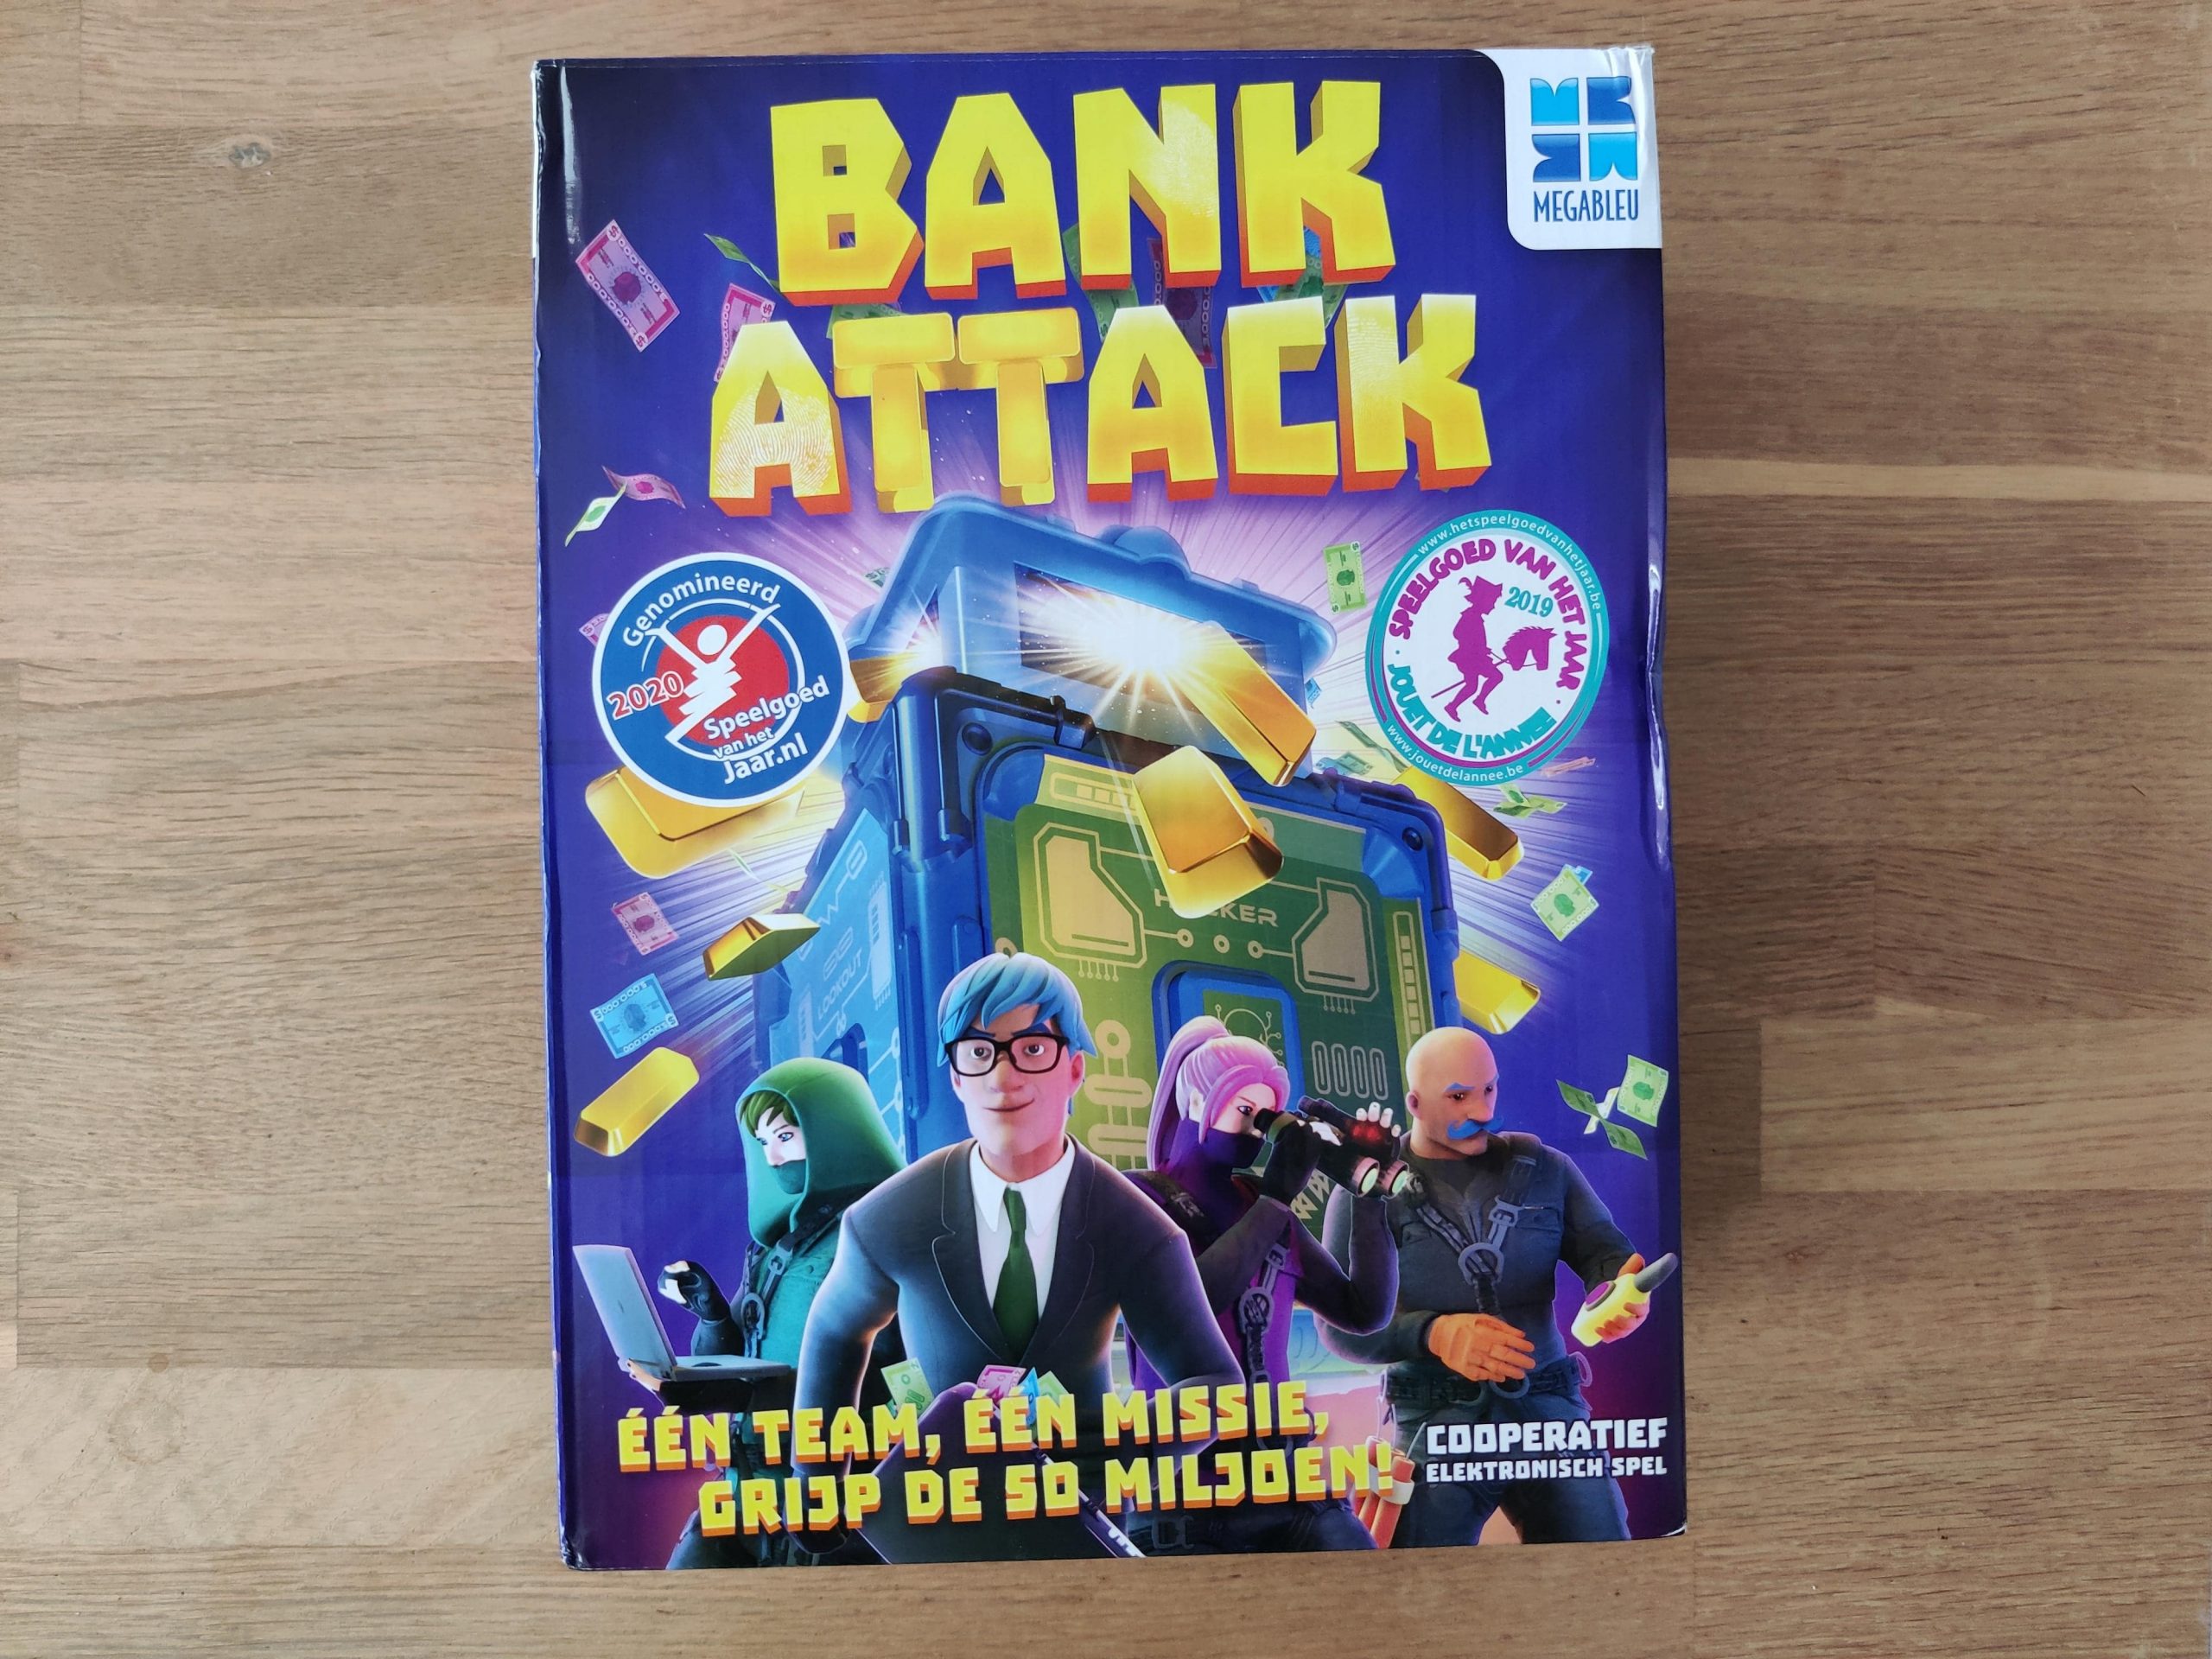 Bank Attack